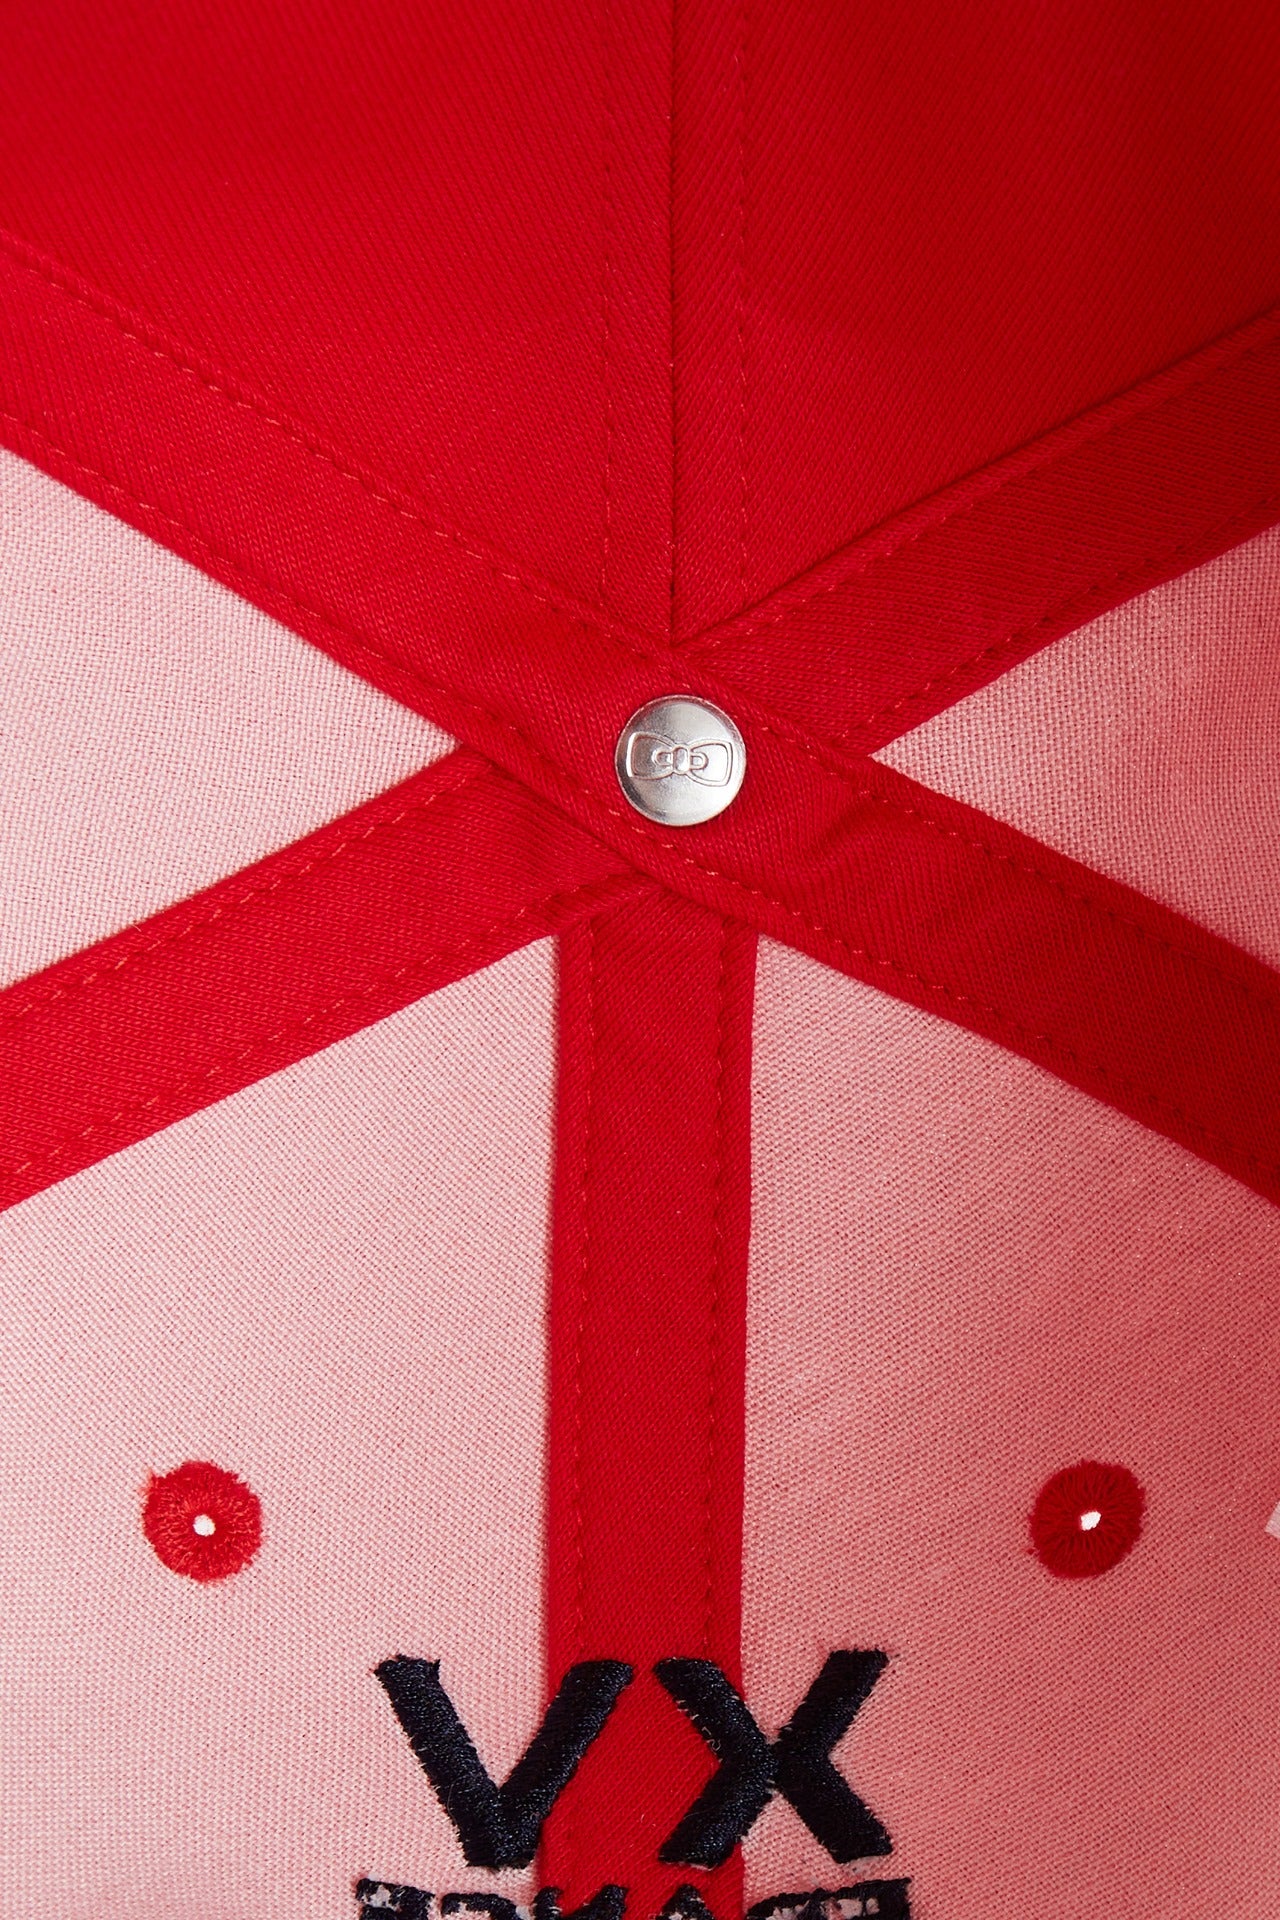 Casquette en coton bicolore marine et rouge emblème coq